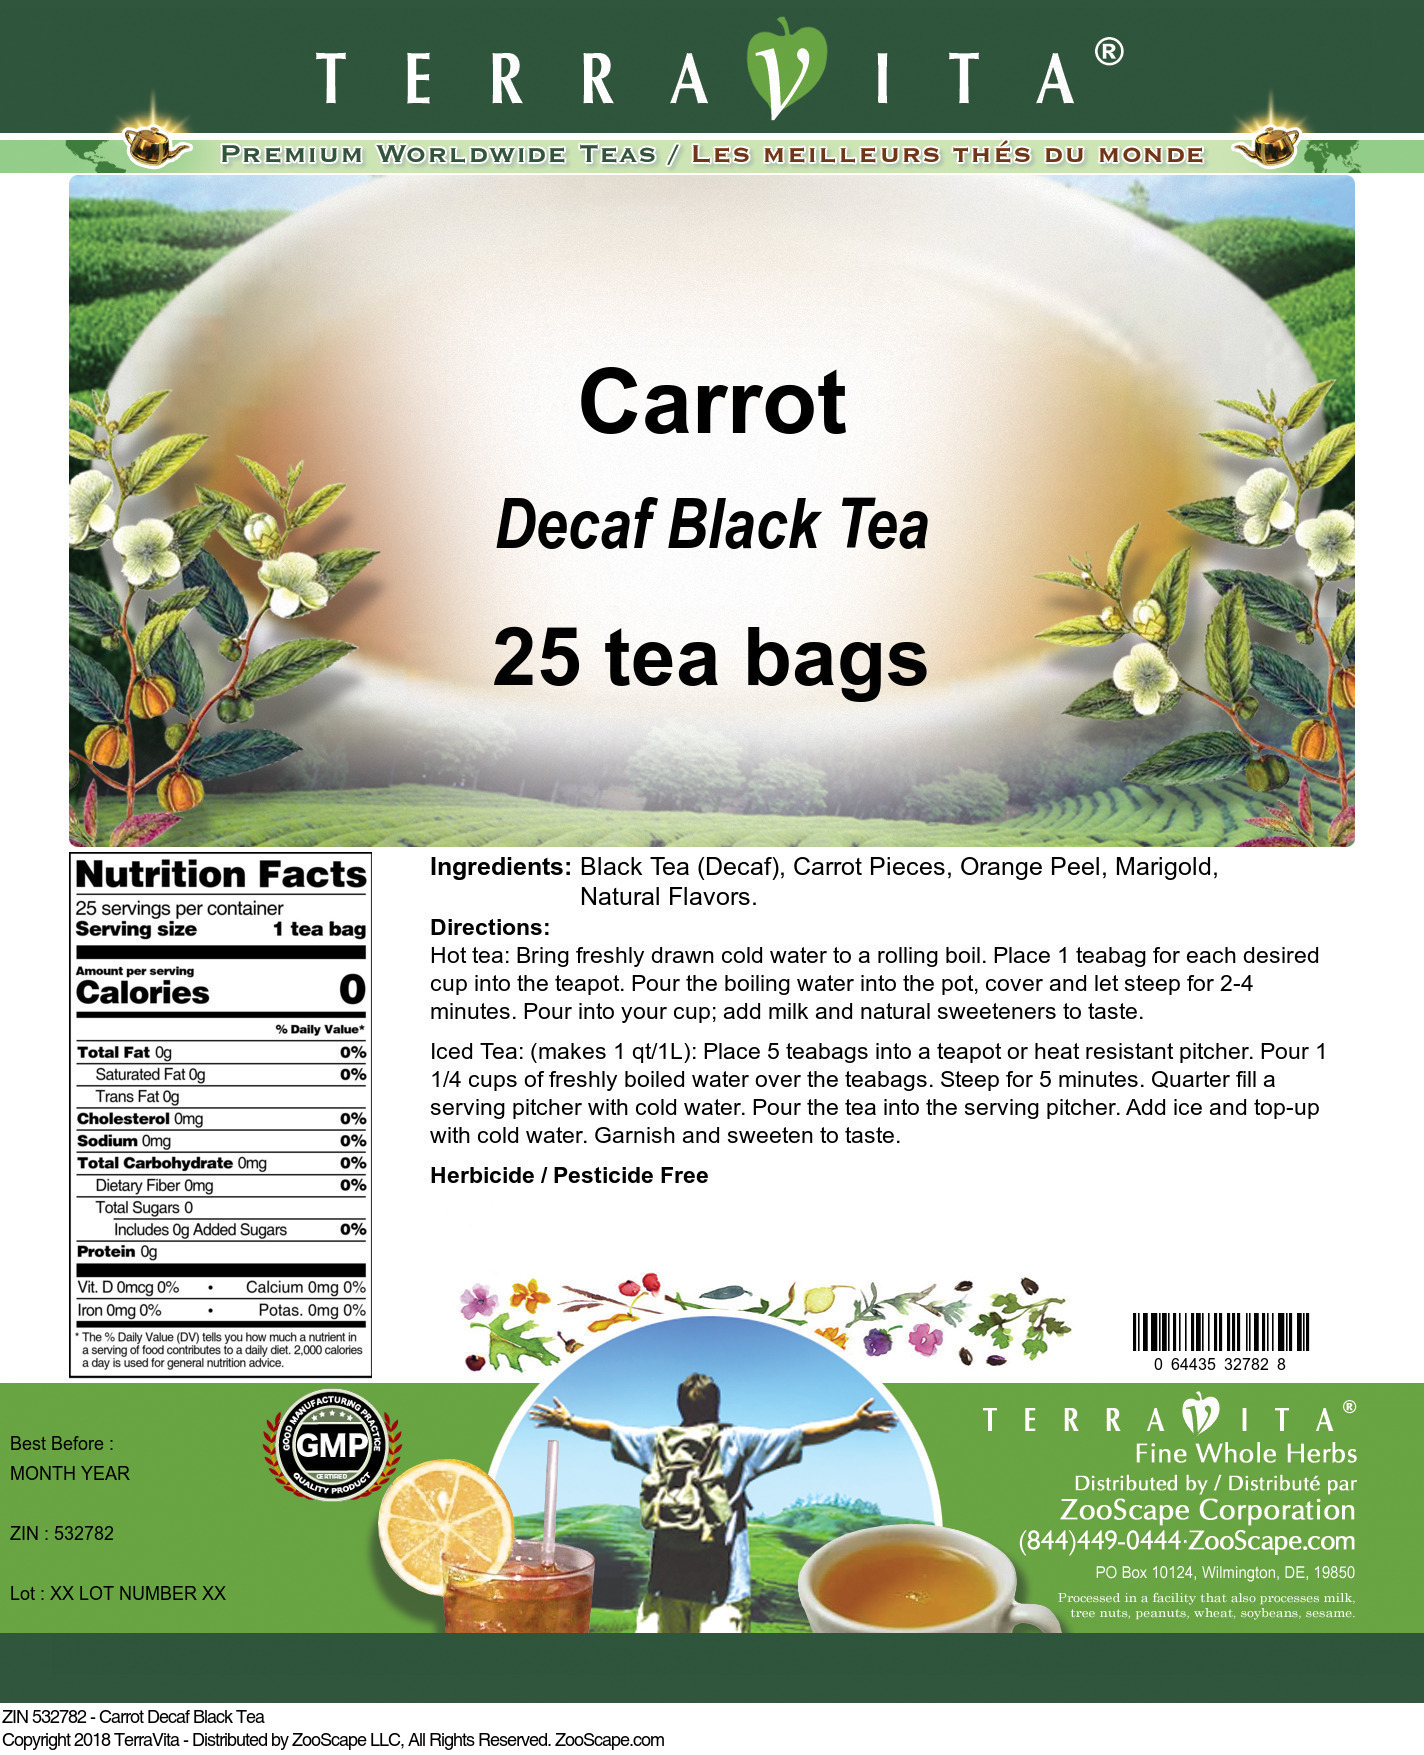 Carrot Decaf Black Tea - Label